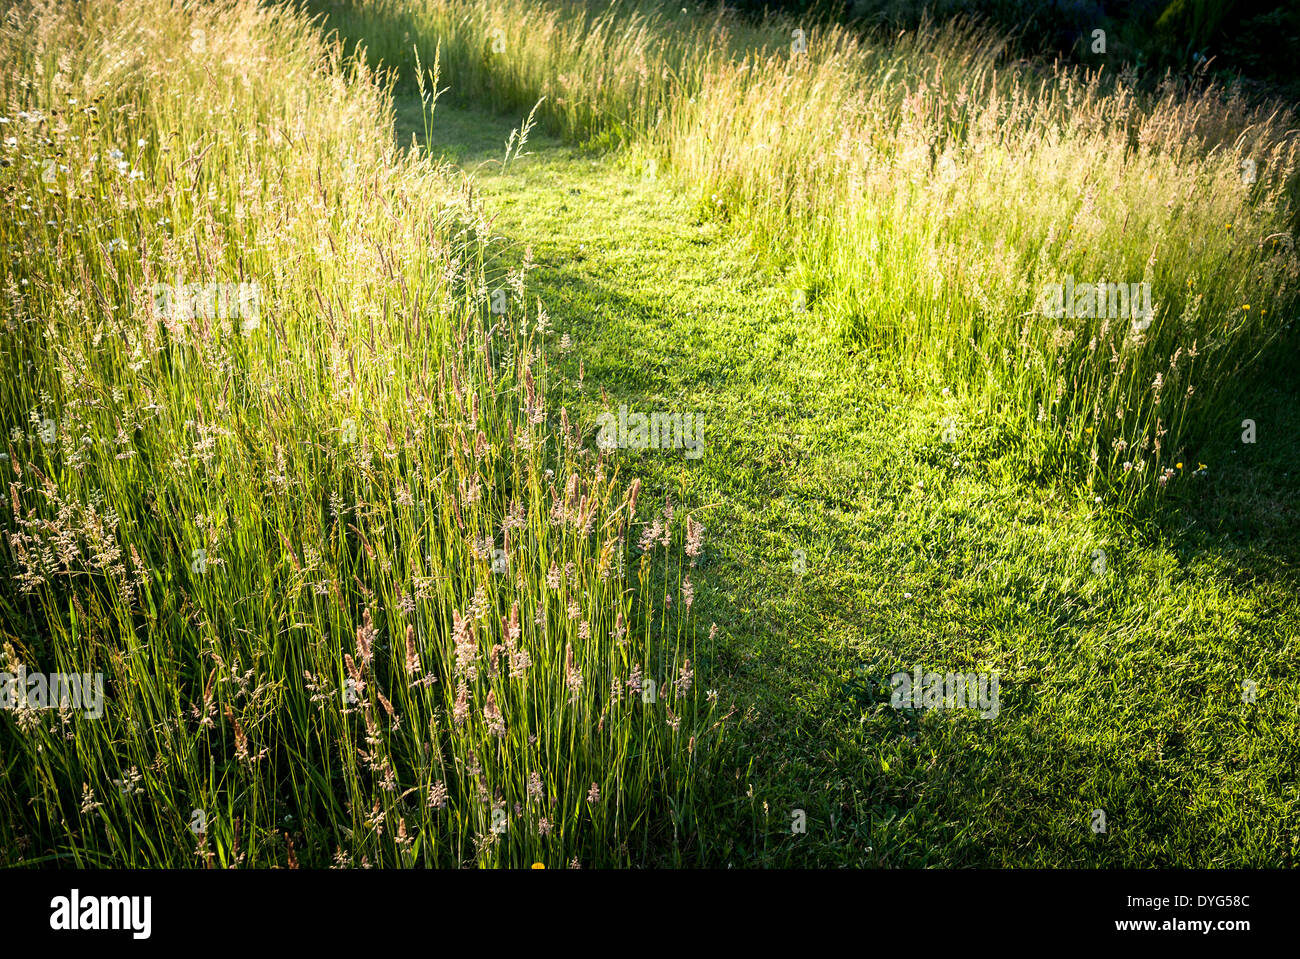 Grasrasen mit Pfad dürfen wachsen, um Insekten und Vögeln in Wiltshire, England, einen Lebensraum zu bieten Stockfoto